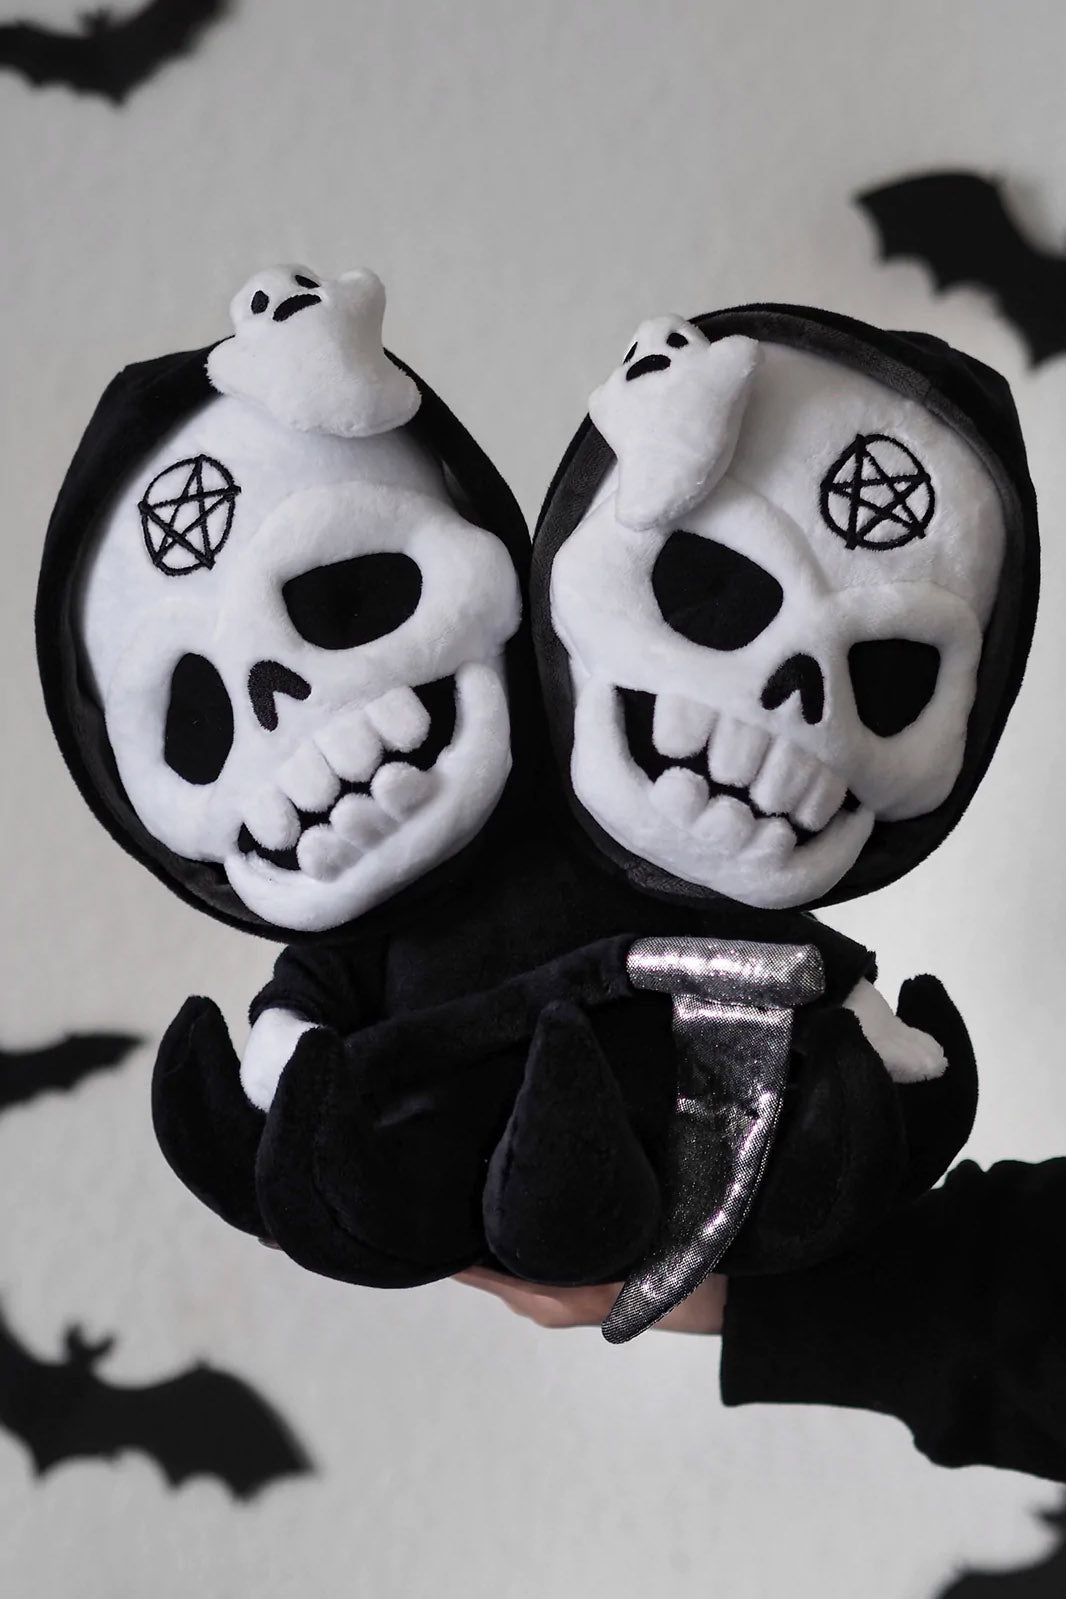 Grim Reaper: Double Death Plush Toy